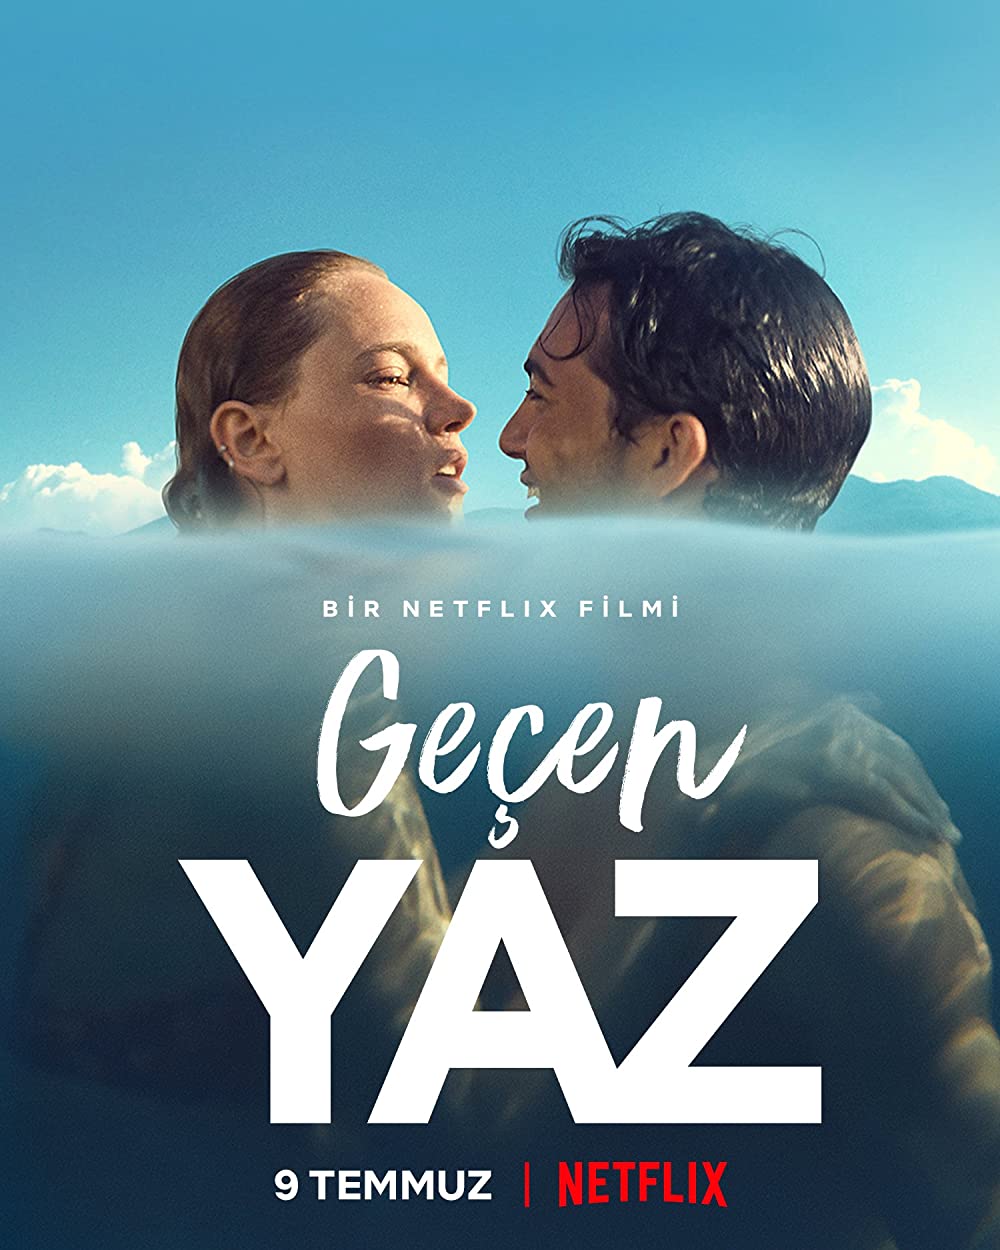 Filmbeschreibung zu Geçen Yaz